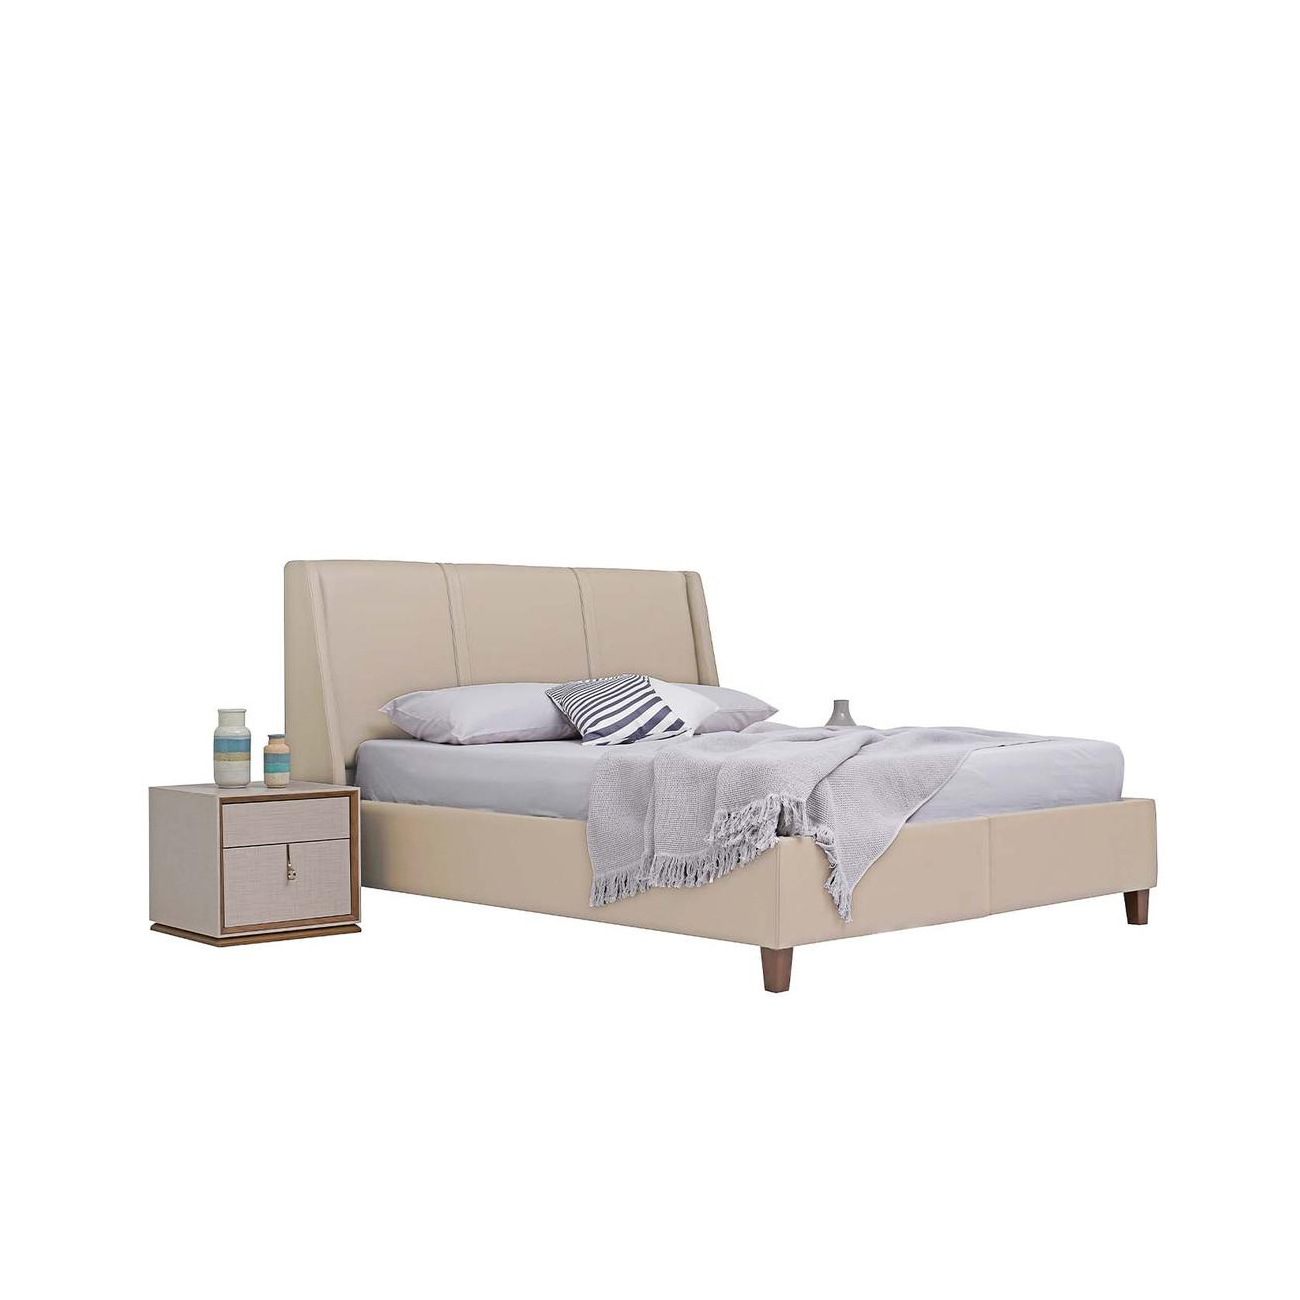 Кровать Enza Home Netha, двуспальная, с подъемным механизмом, 160х200 см, ткань 22102 Cream07.110.0516.1306.0006.0000.221+07.100.0516.1306.0013.0003.221